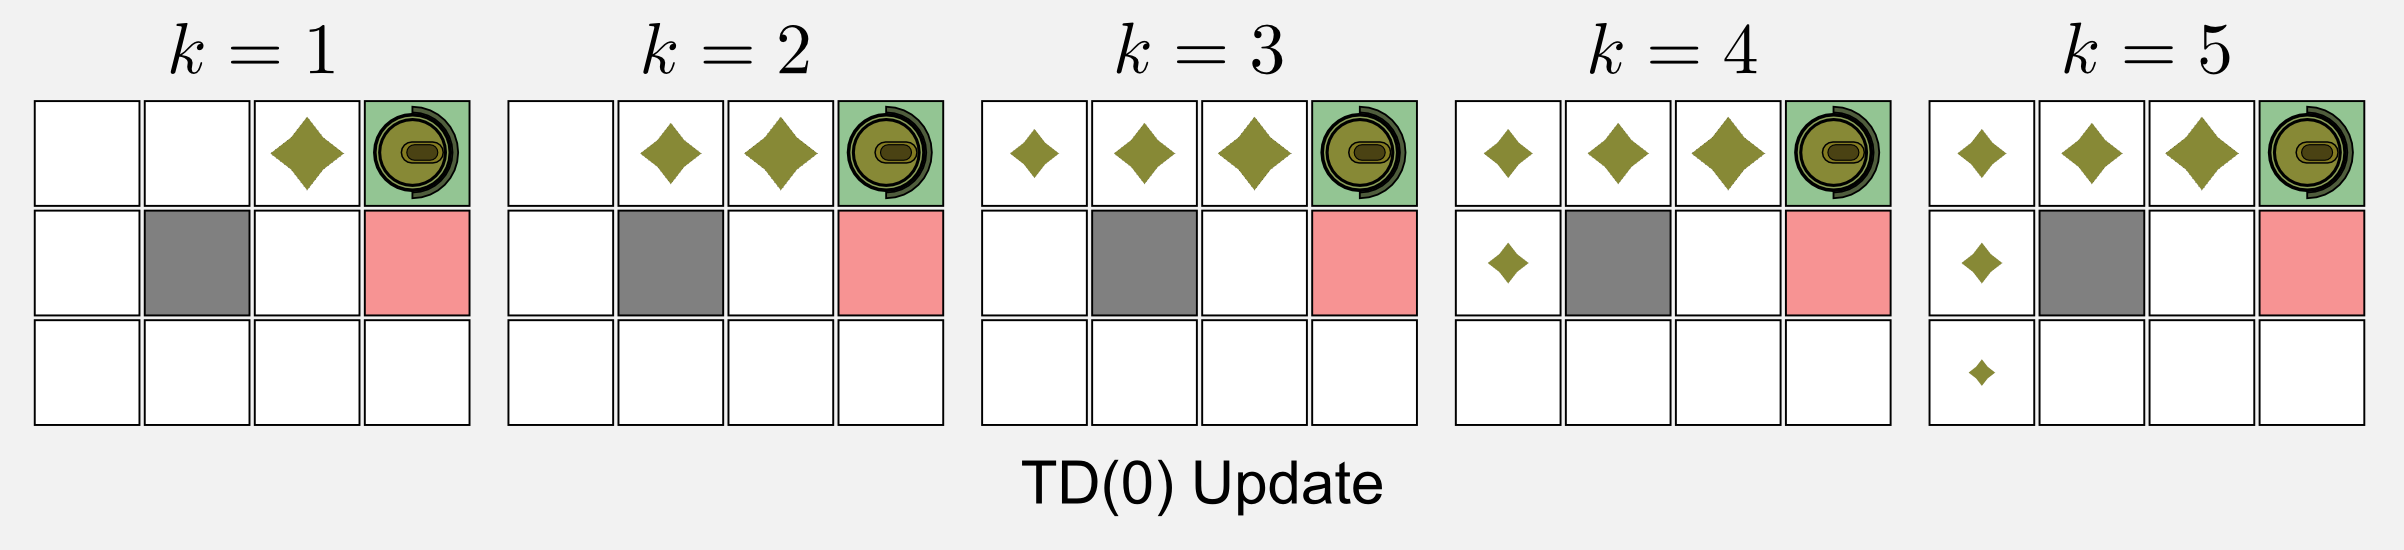 Reinforcement Learning TD(0) update rule propagation